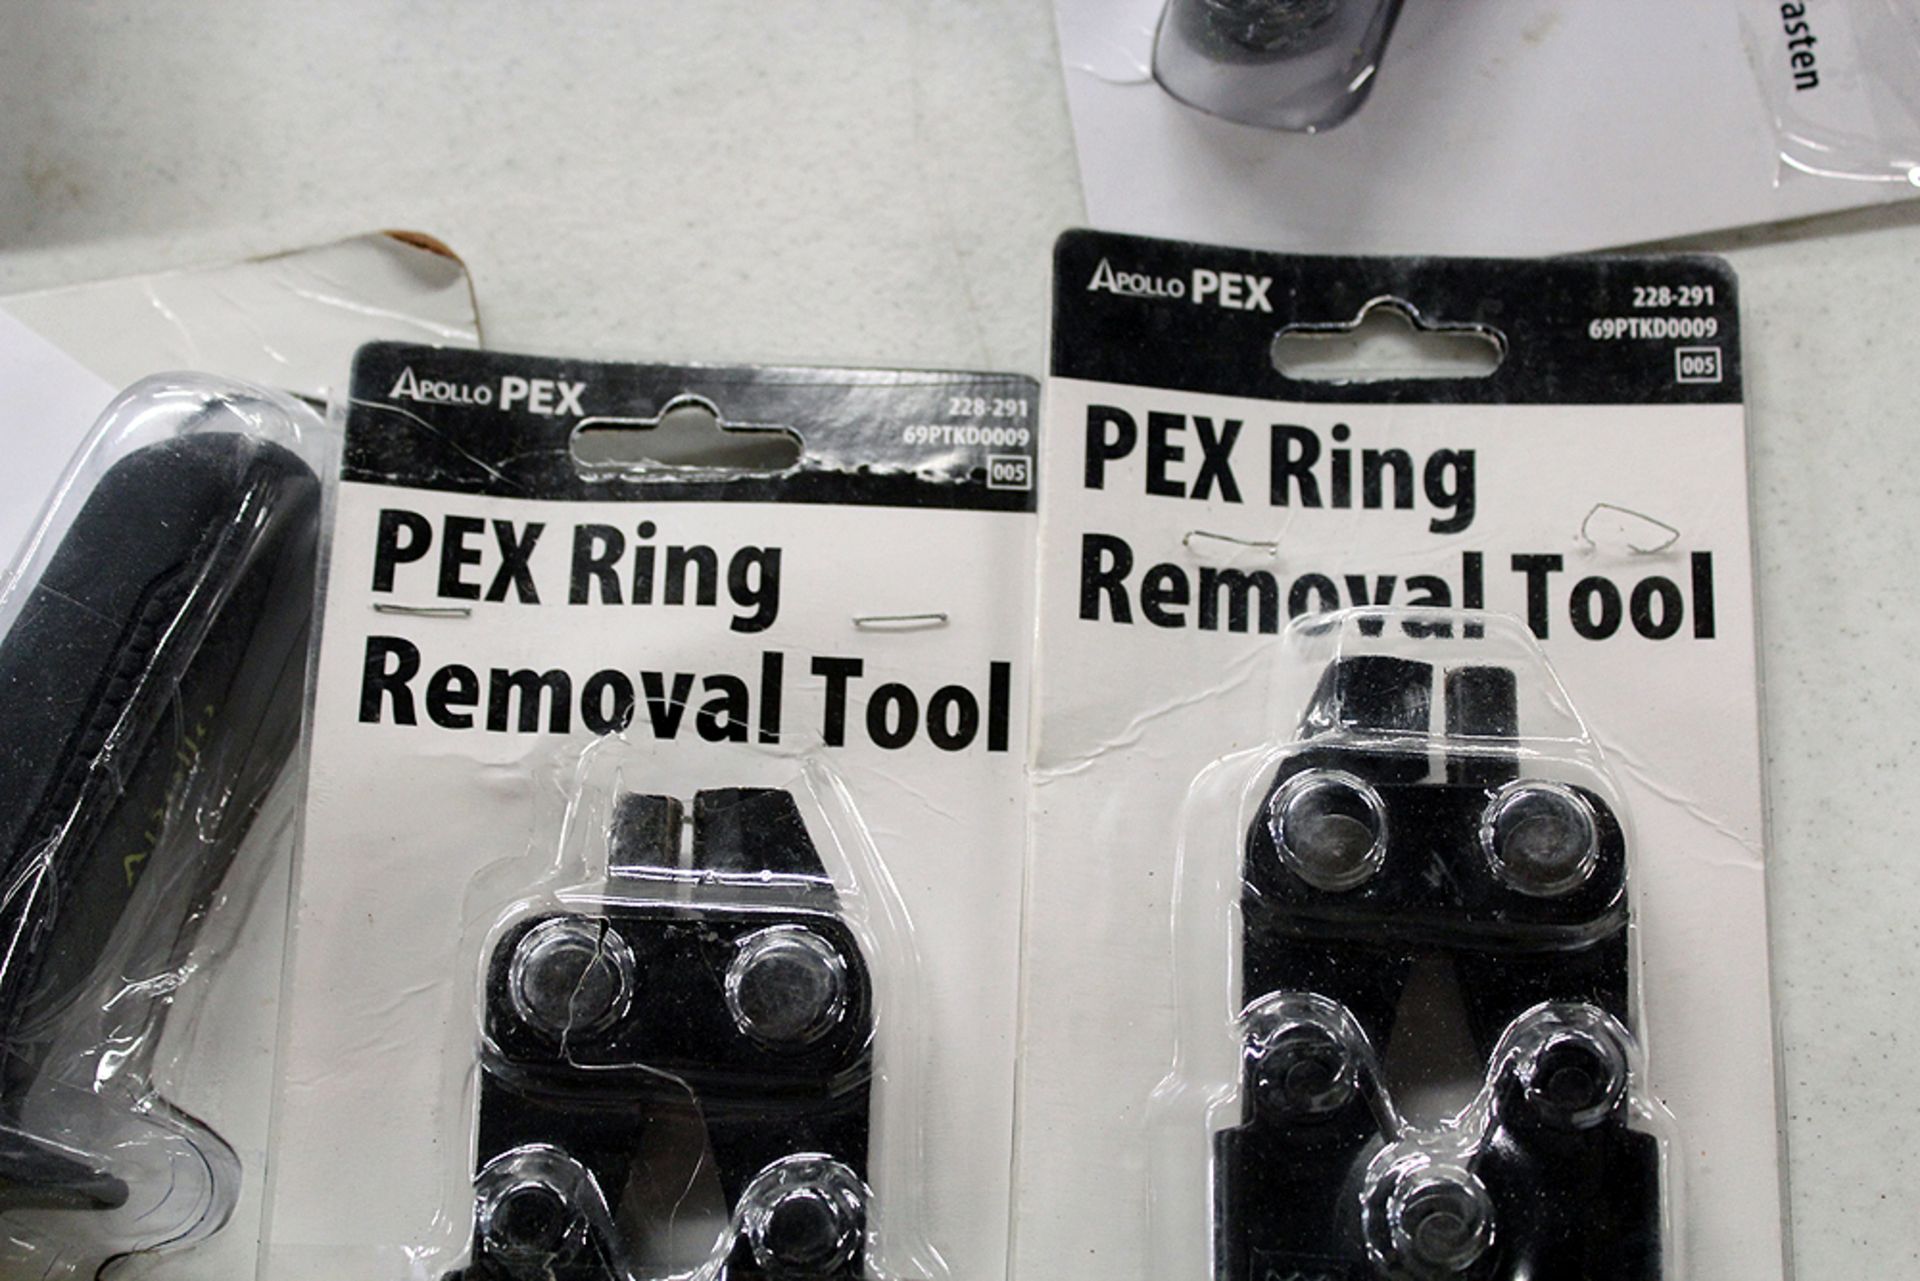 Pex tools